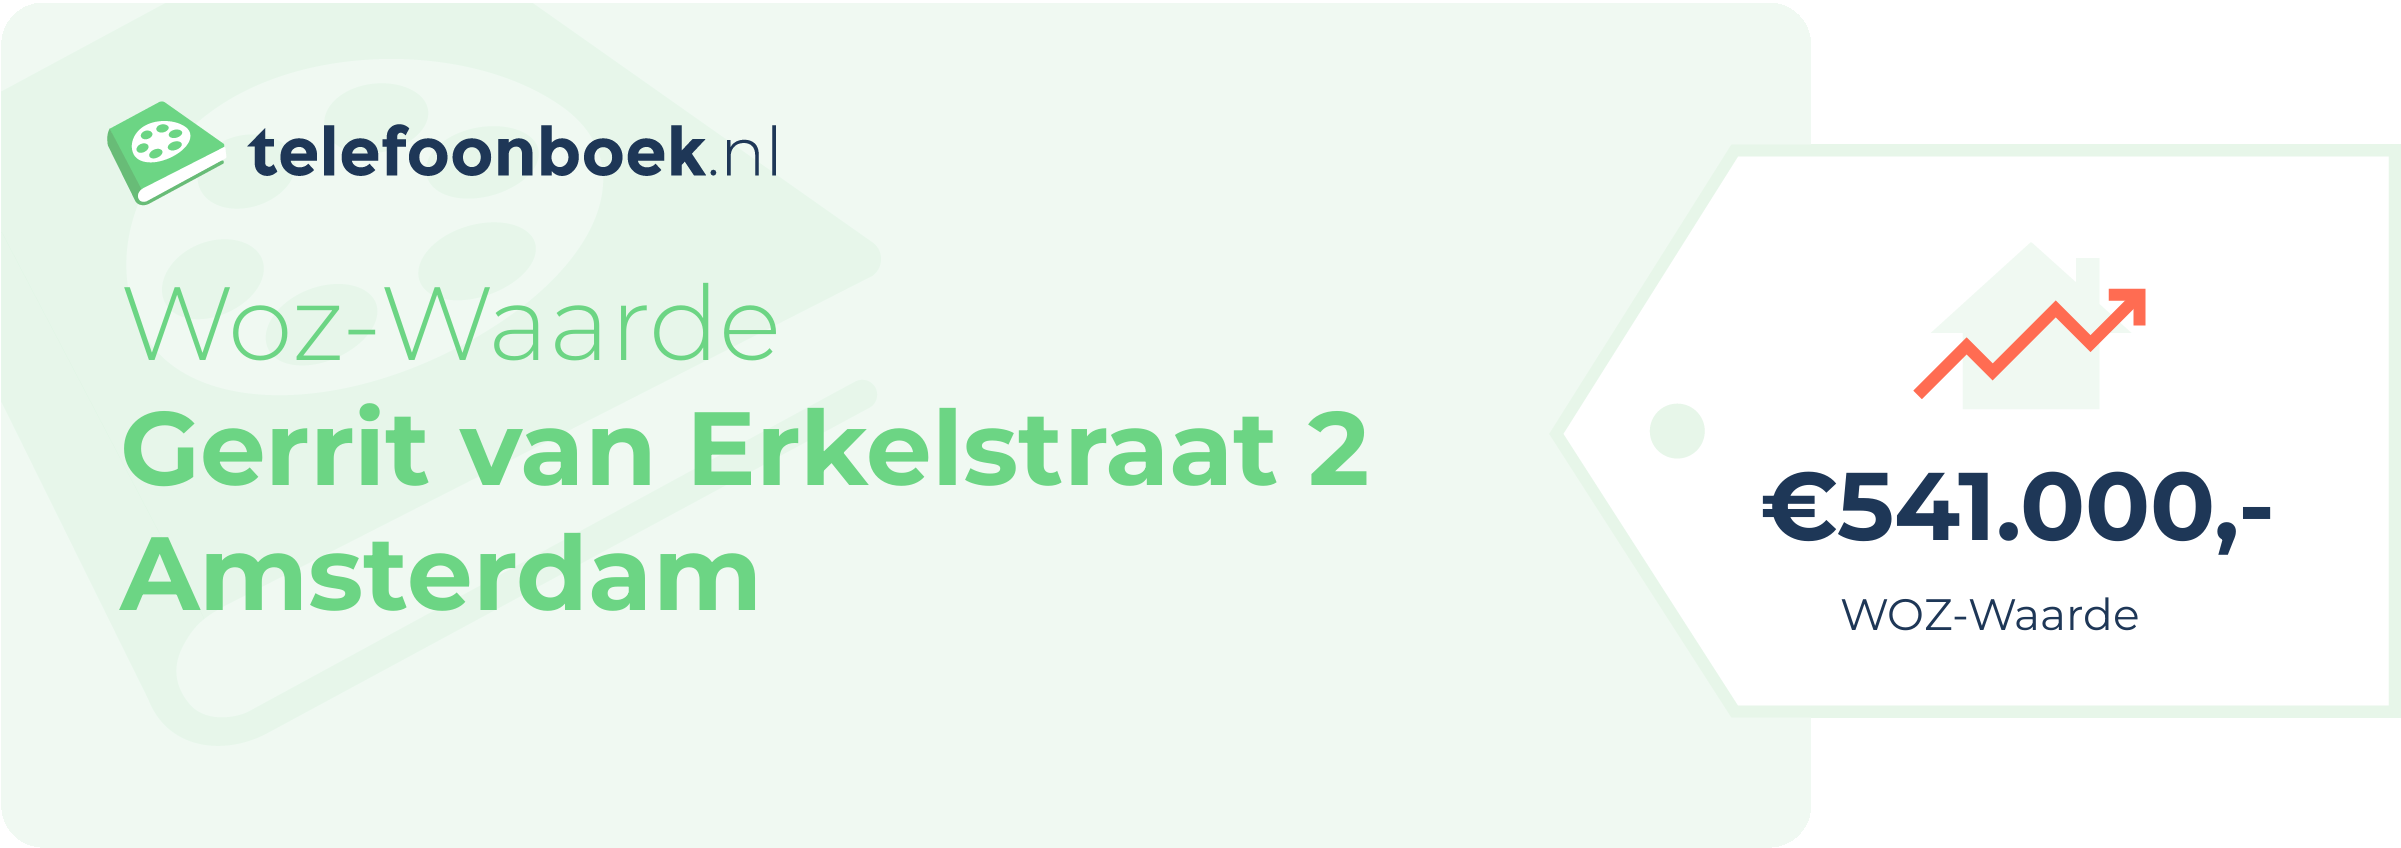 WOZ-waarde Gerrit Van Erkelstraat 2 Amsterdam